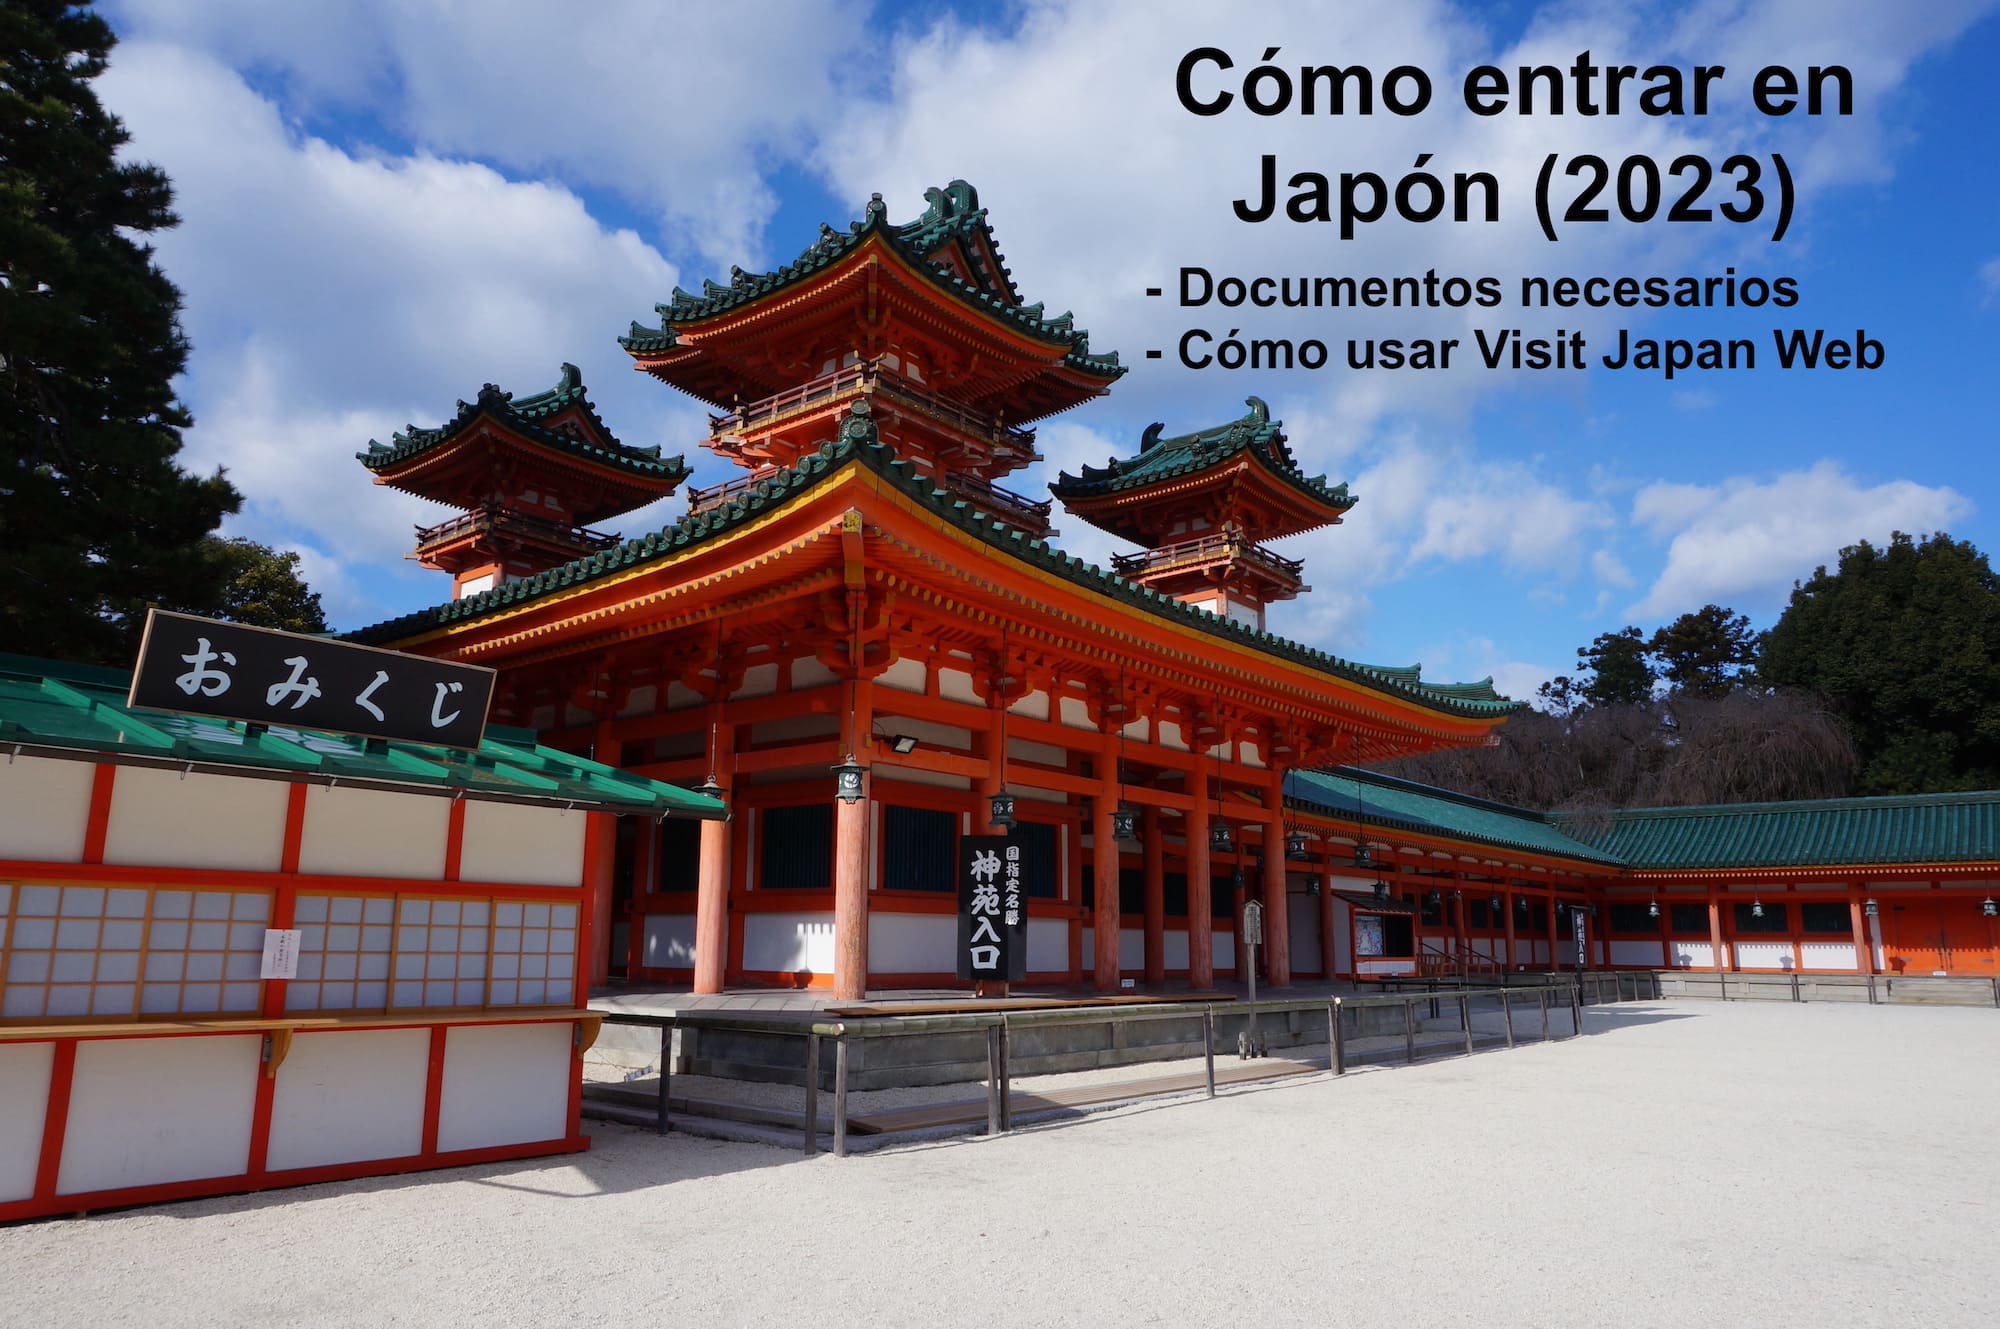 viajar: Cómo entrar en Japón (2023) – Qué documentos necesito para una entrada rápida a Japón?